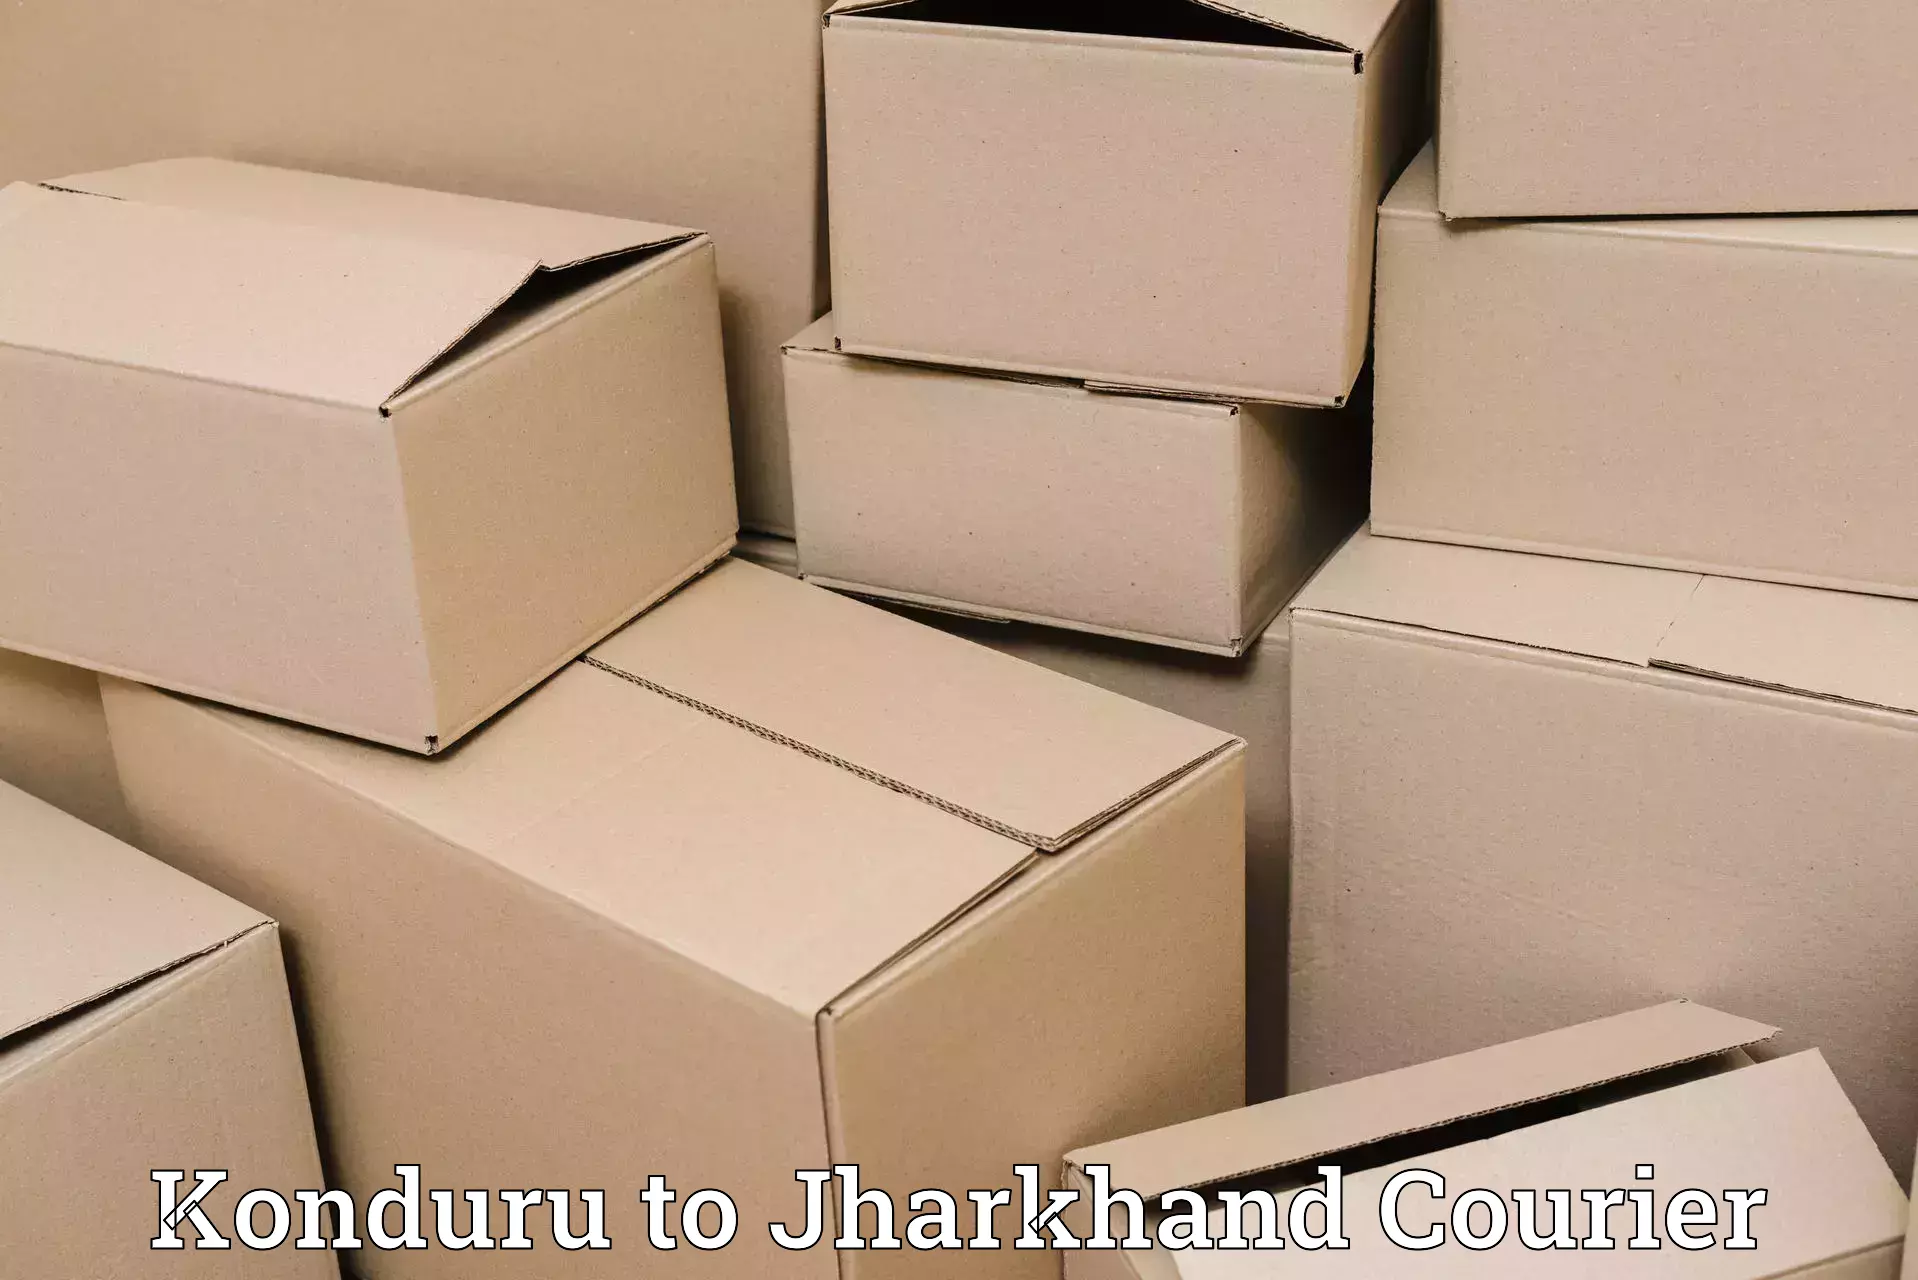 Efficient order fulfillment in Konduru to Jharkhand